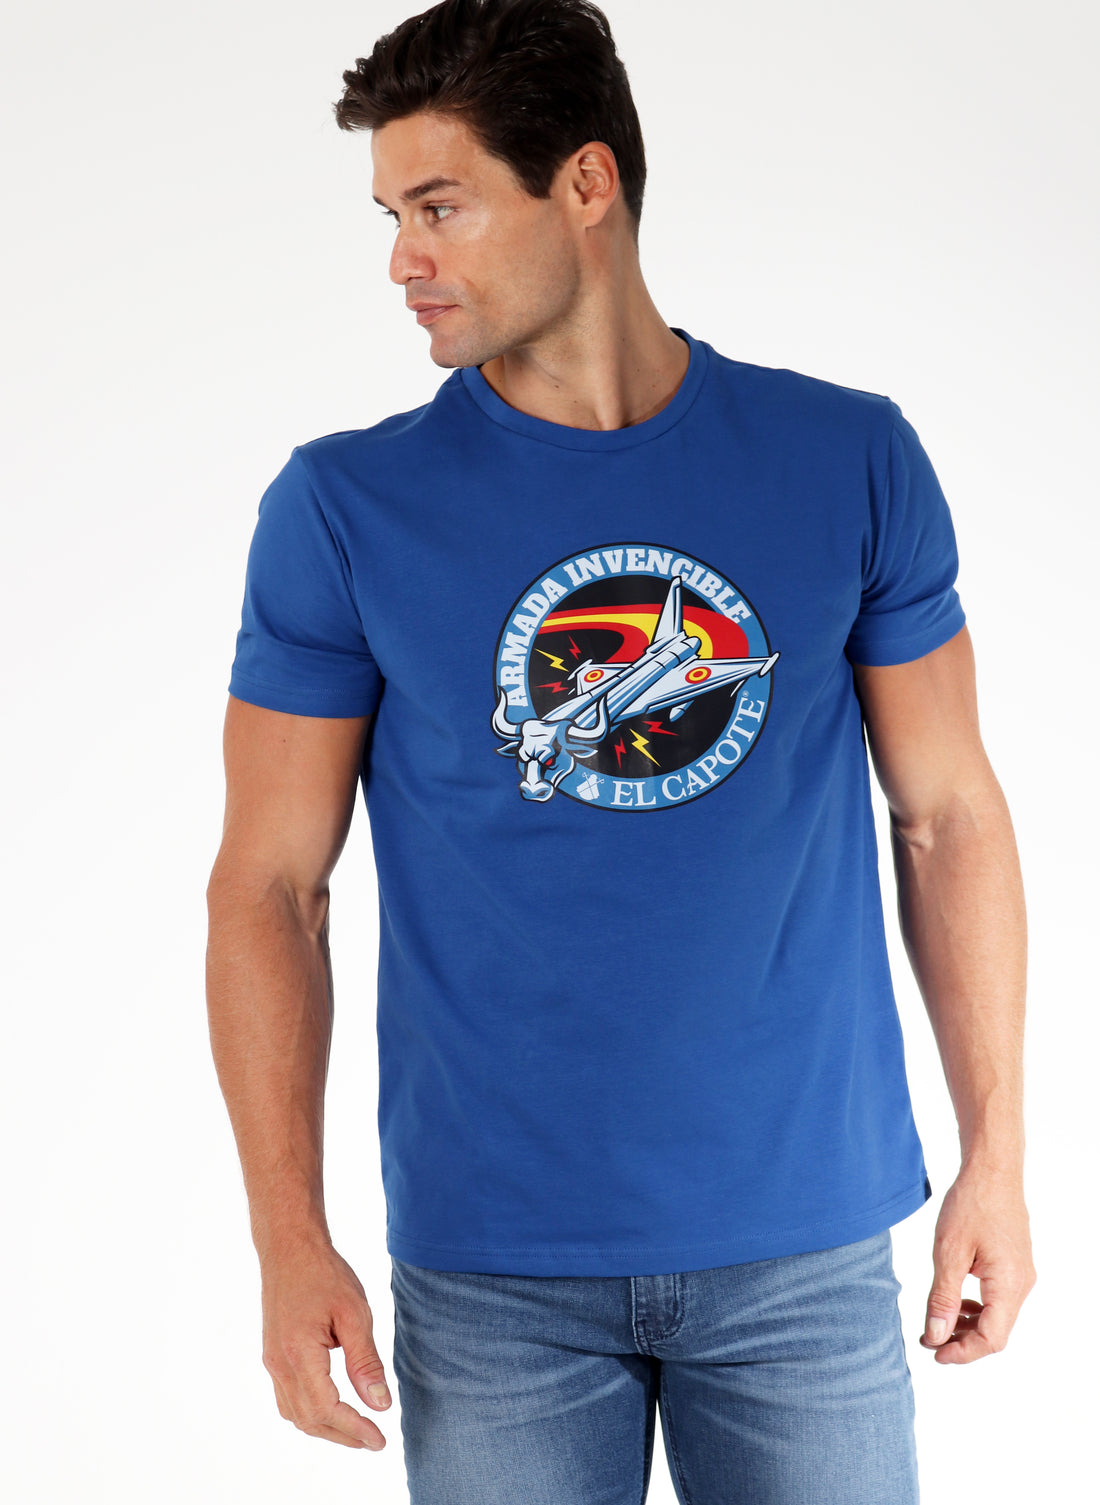 T-shirt Blue "Armée Invincible" Homme